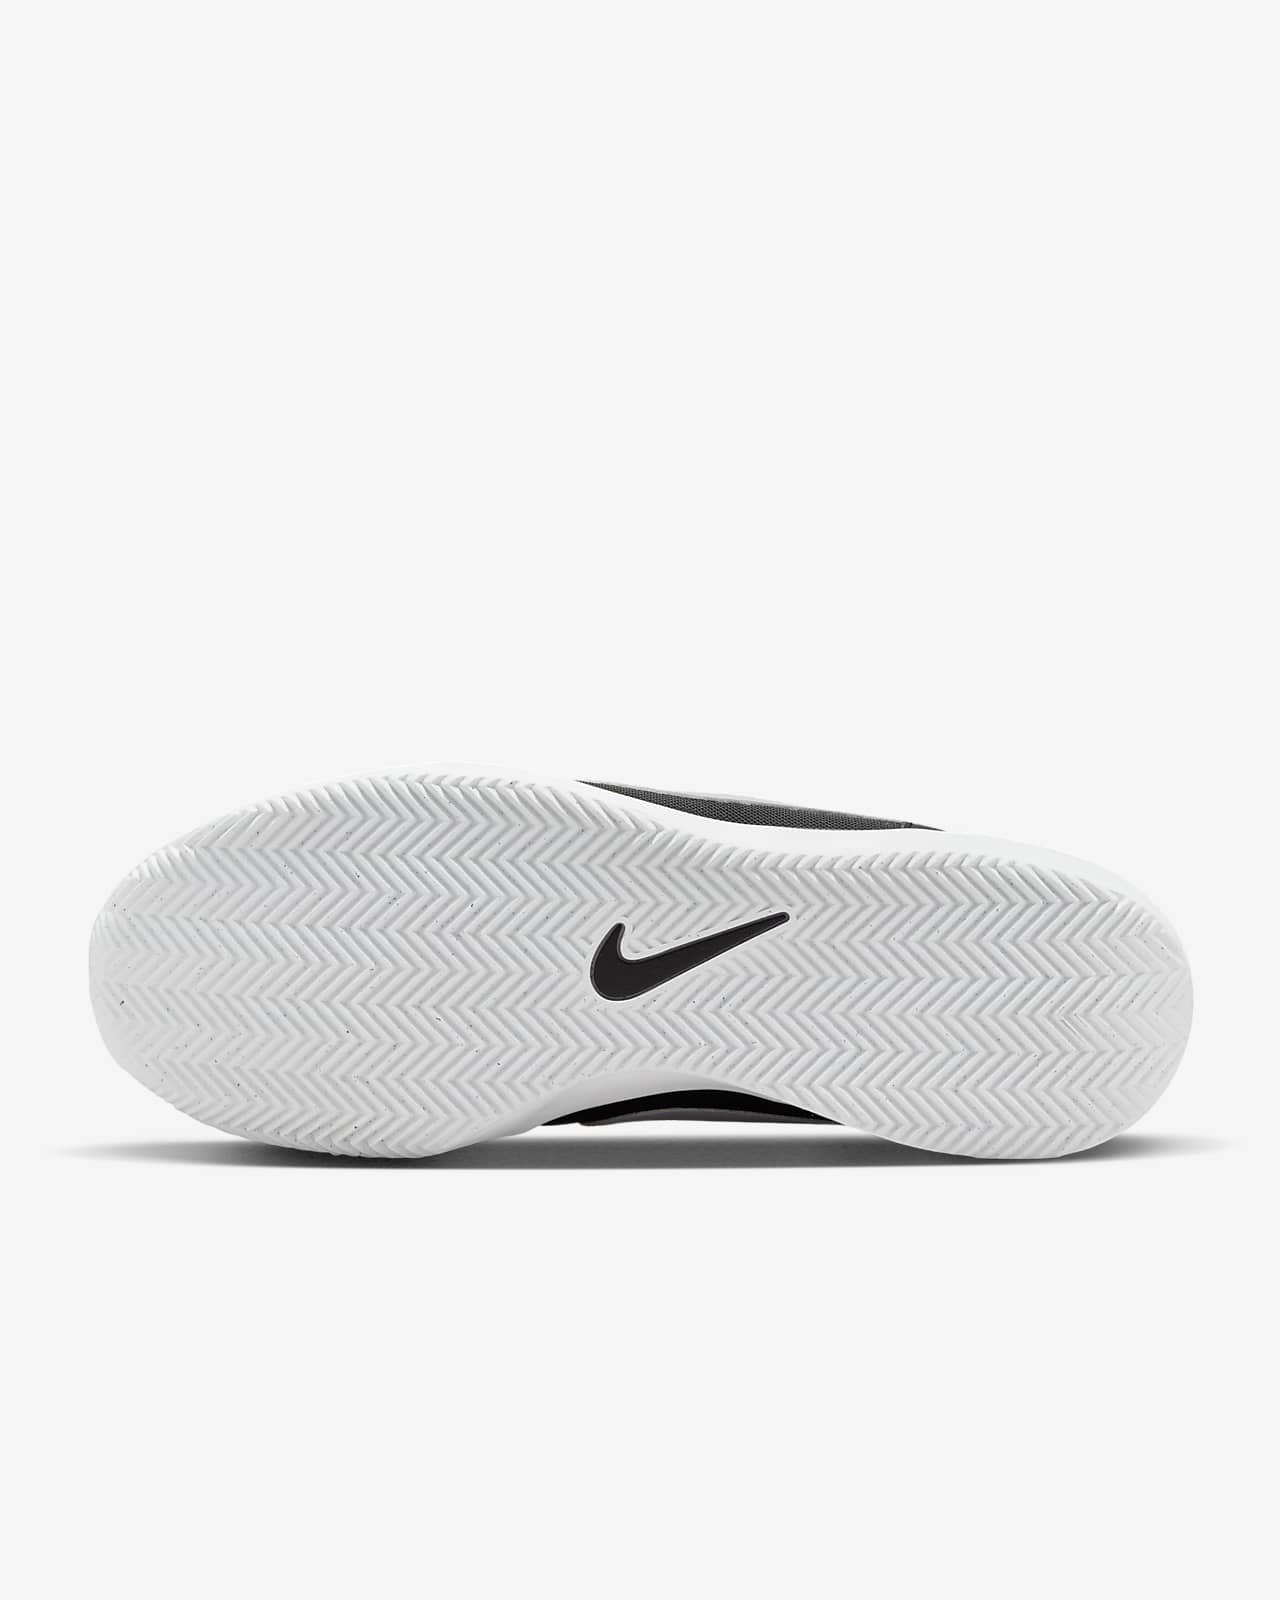 Zoom Lite 3 Zapatillas de tenis para tierra batida - Hombre. Nike